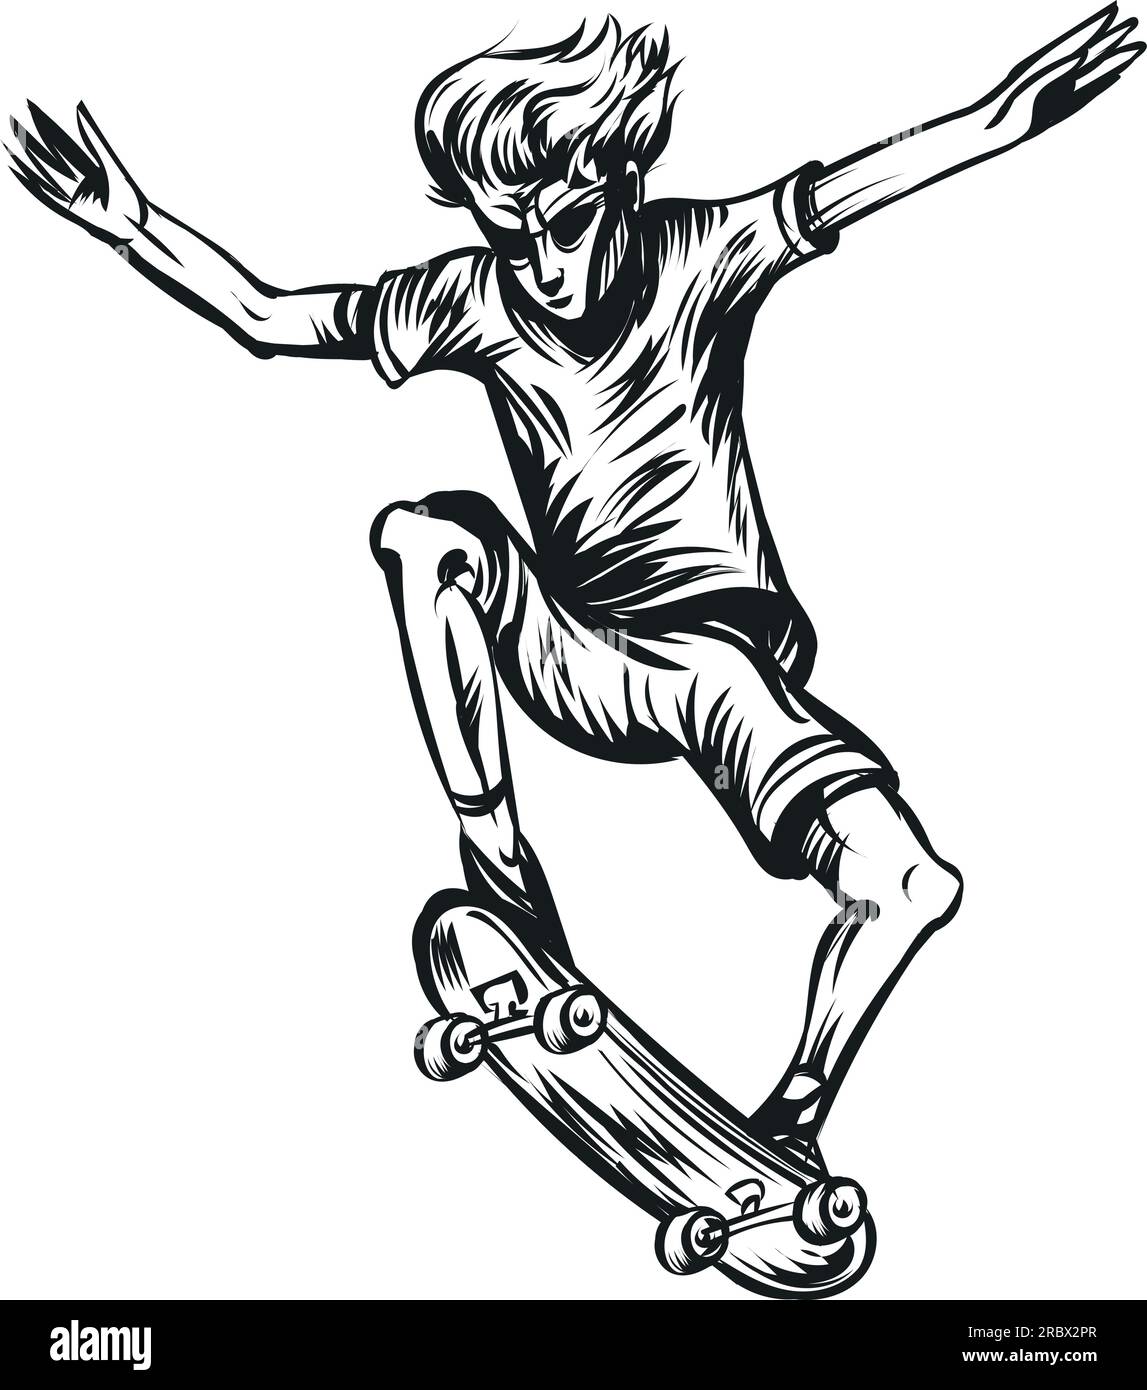 Skizze eines jungen Skateboarders, der einen Sprung auf einem Skateboard macht Stock Vektor